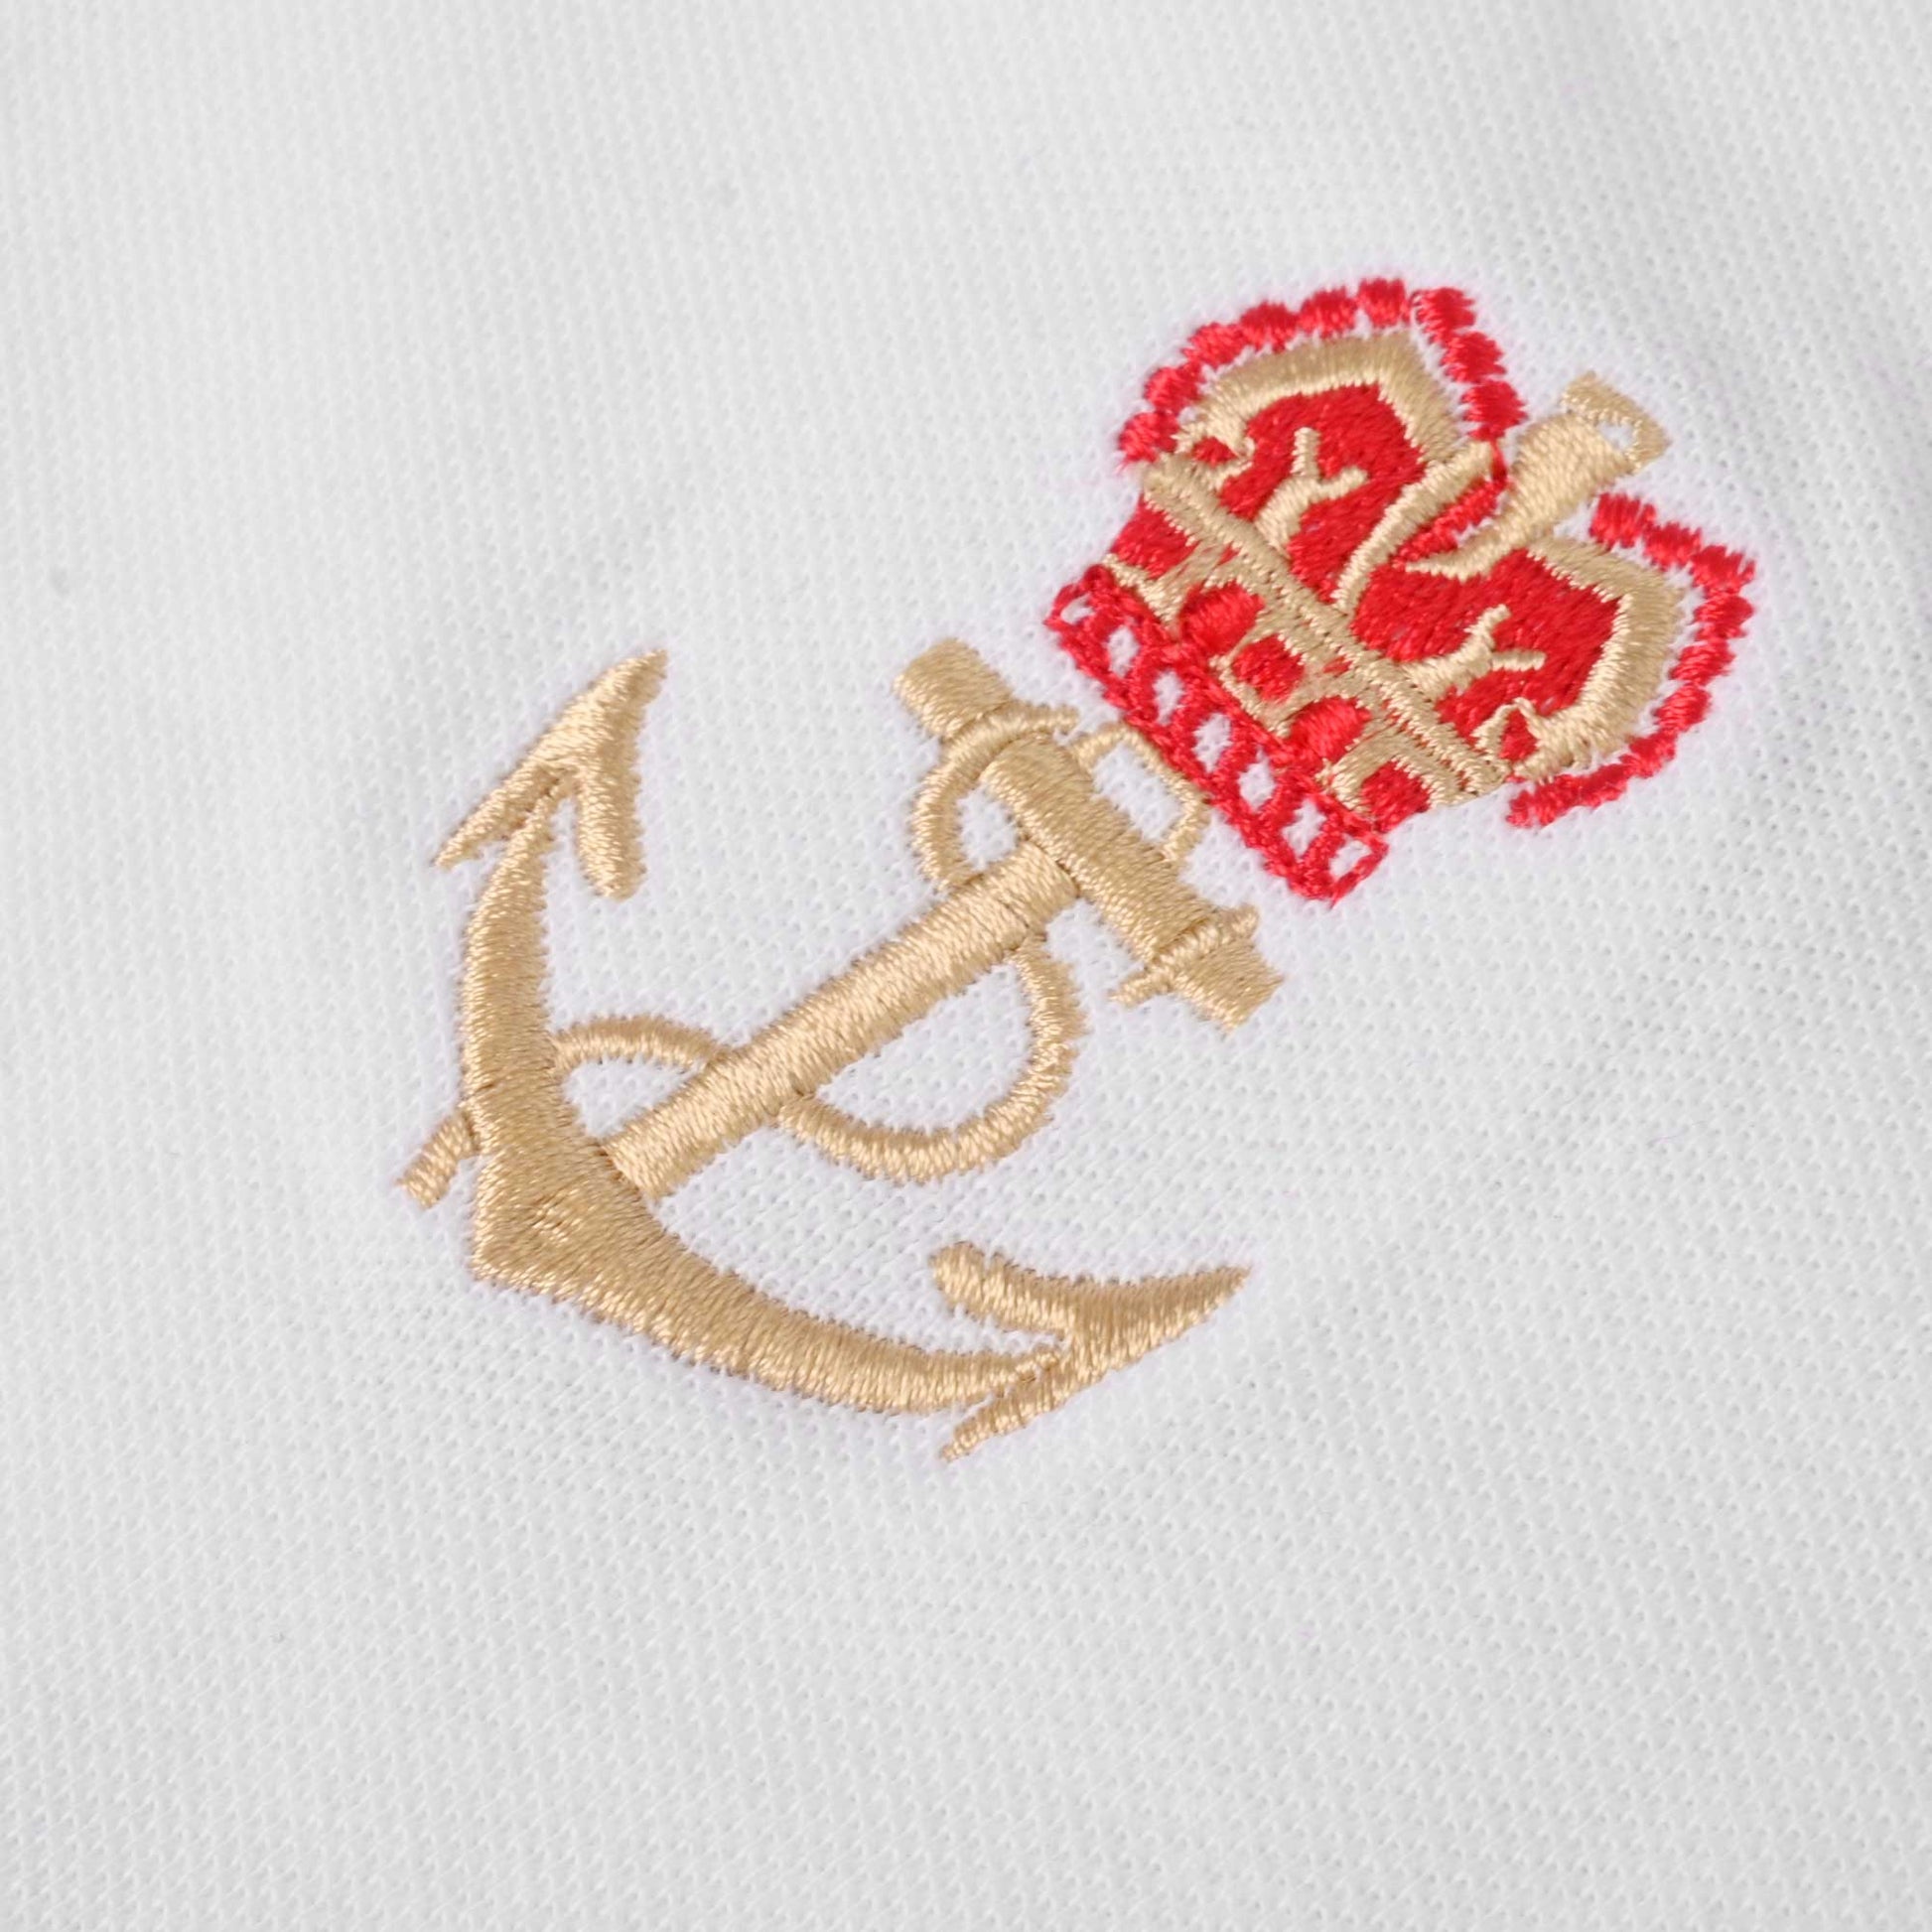 Polo Republica Men's Crown & Anchor Embroidered Short Sleeve Polo Shirt Men's Polo Shirt Polo Republica 